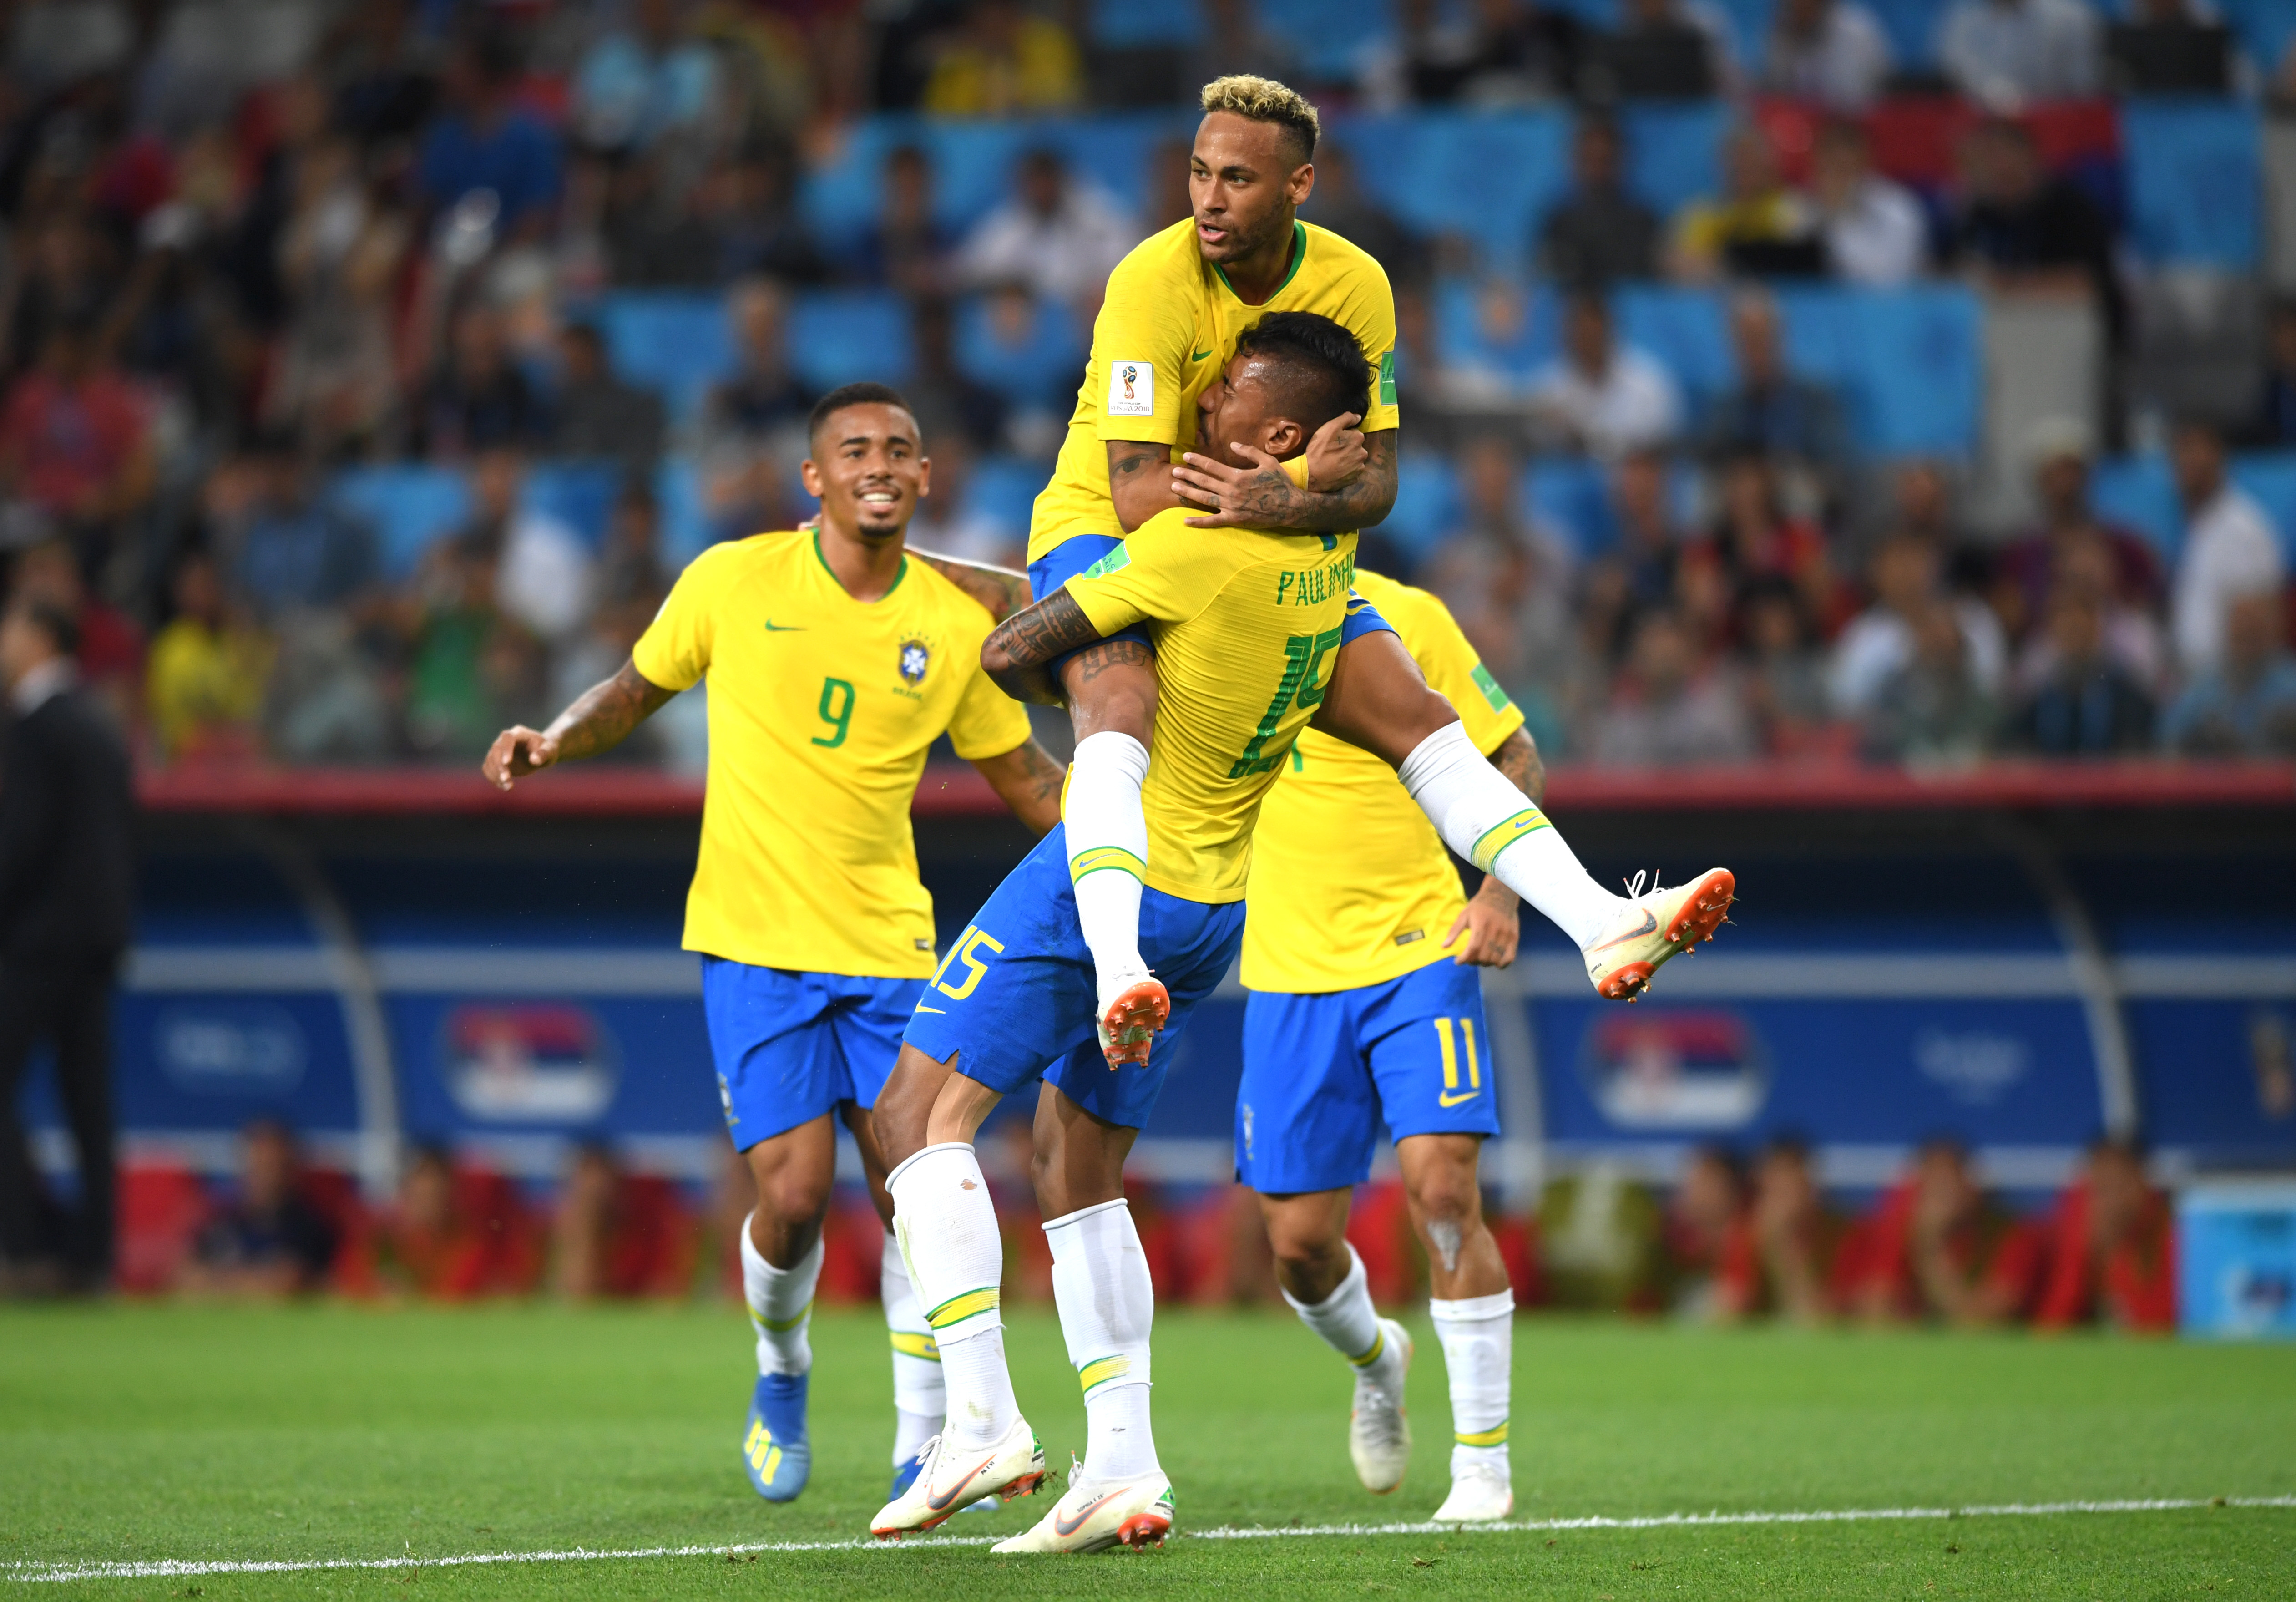 Copa do Brasil: veja os jogos das oitavas de final - Placar - O